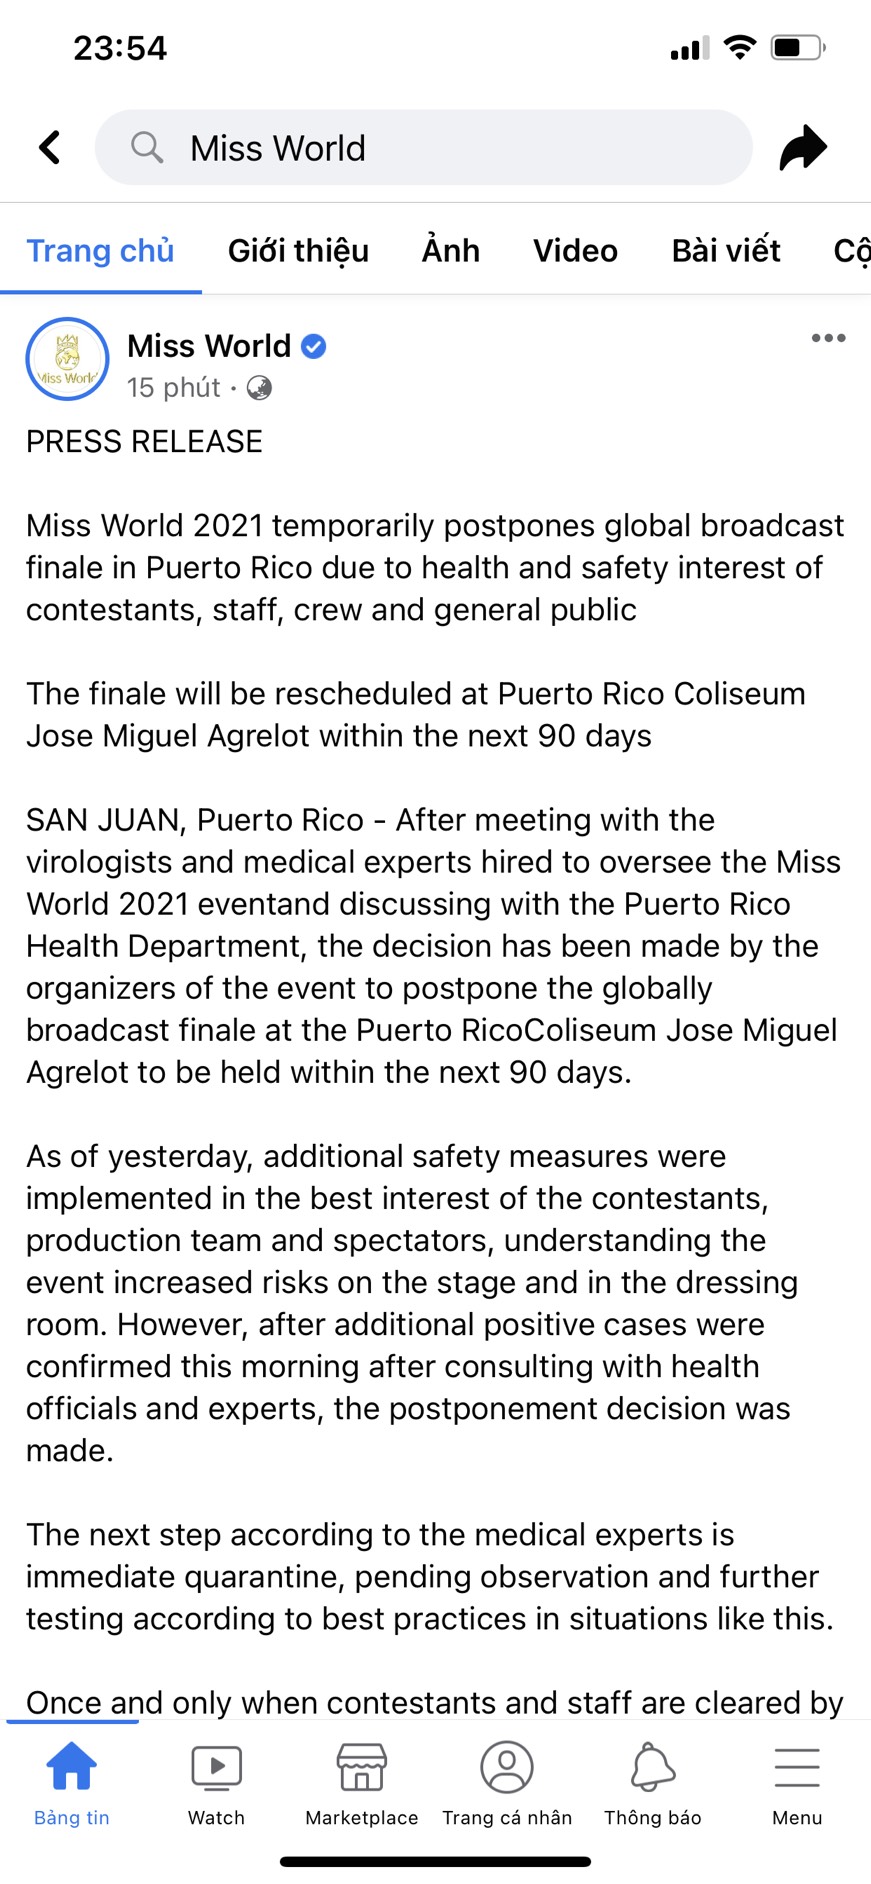 Thông báo hoãn đêm Chung kết Miss World trước đó khiến dư luận xôn xao